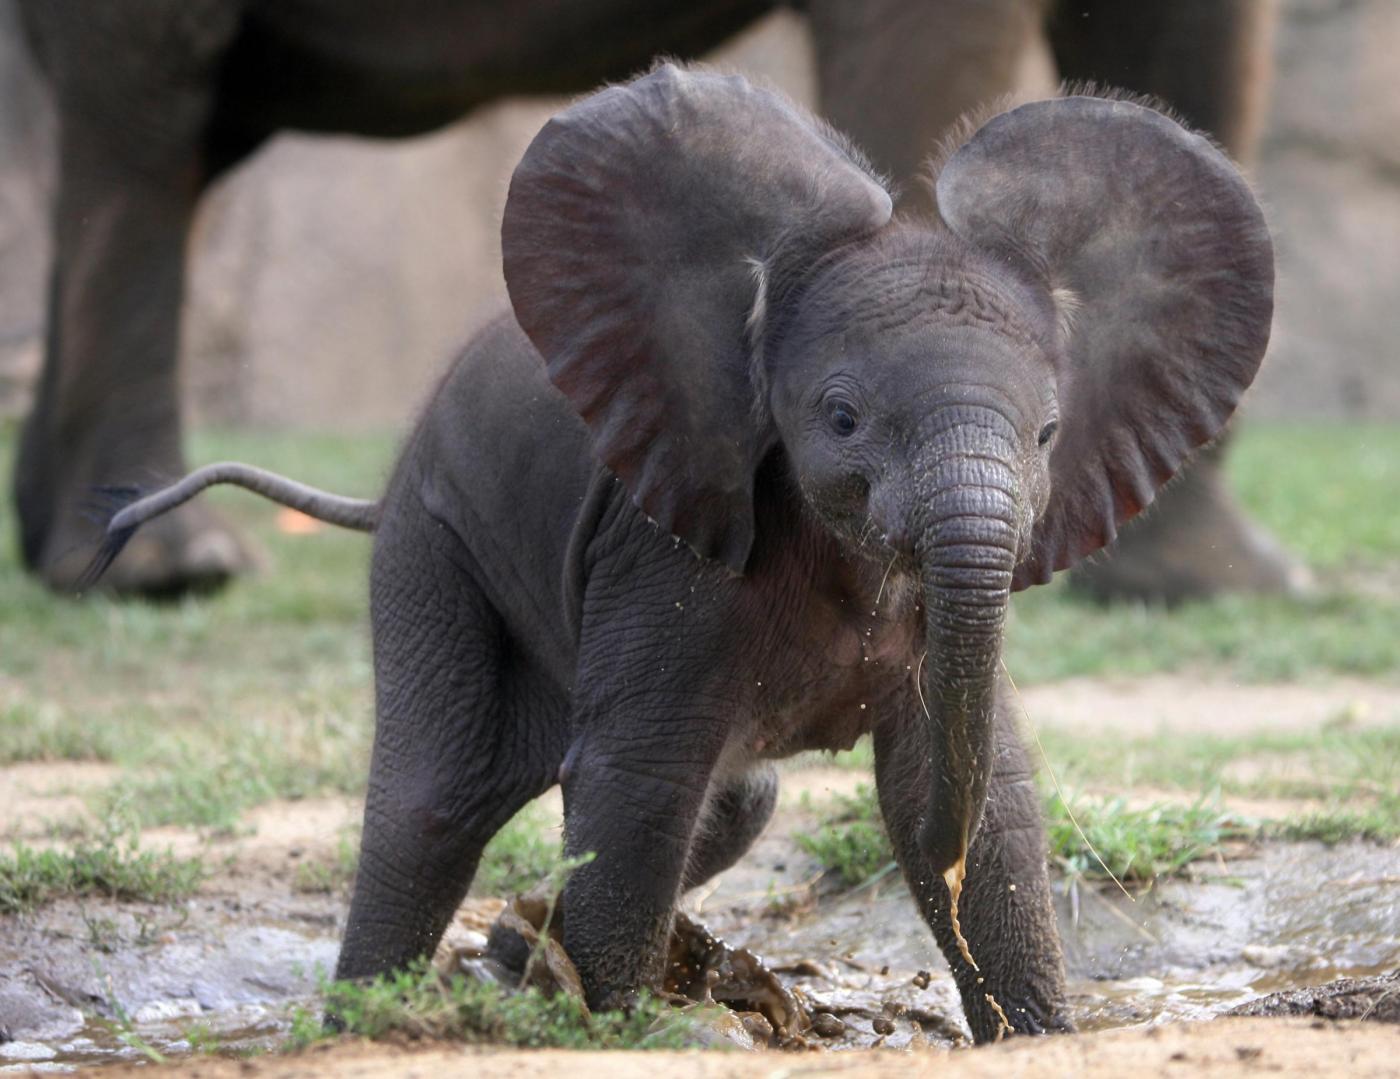 Baby olifant speel in 'n plas